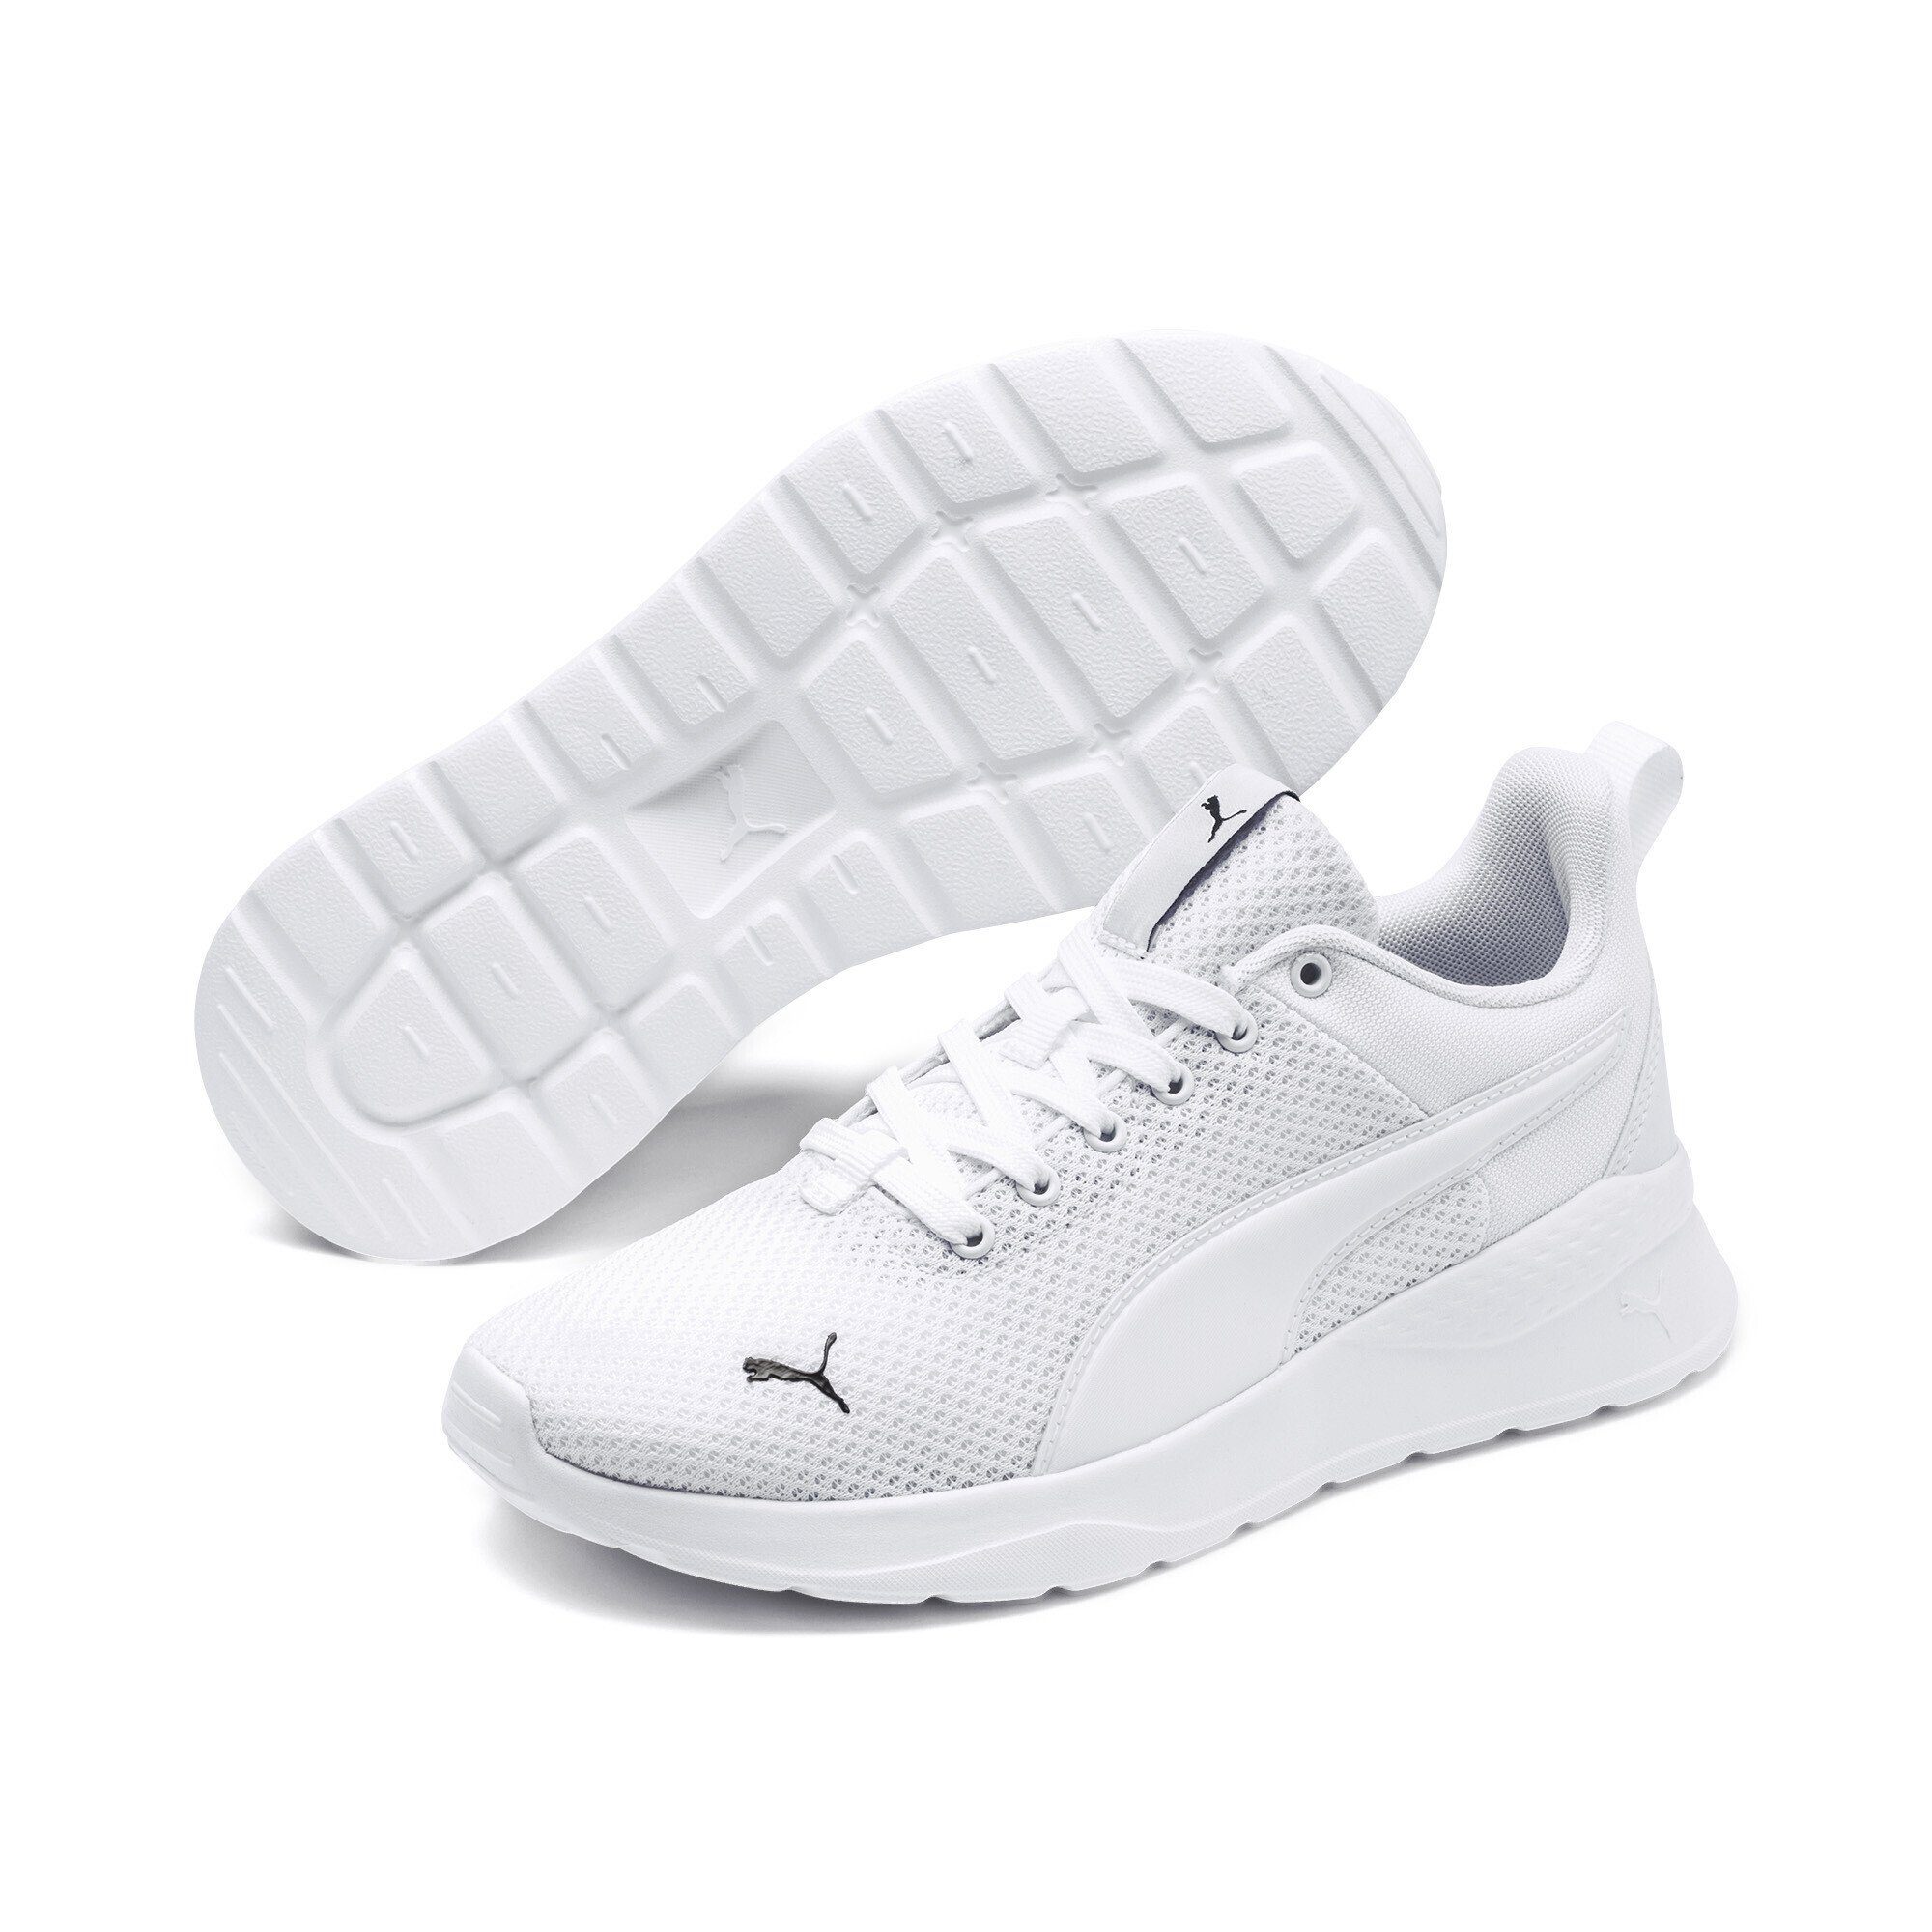 Laufschuh Jugendliche Sneakers Lite Anzarun White PUMA